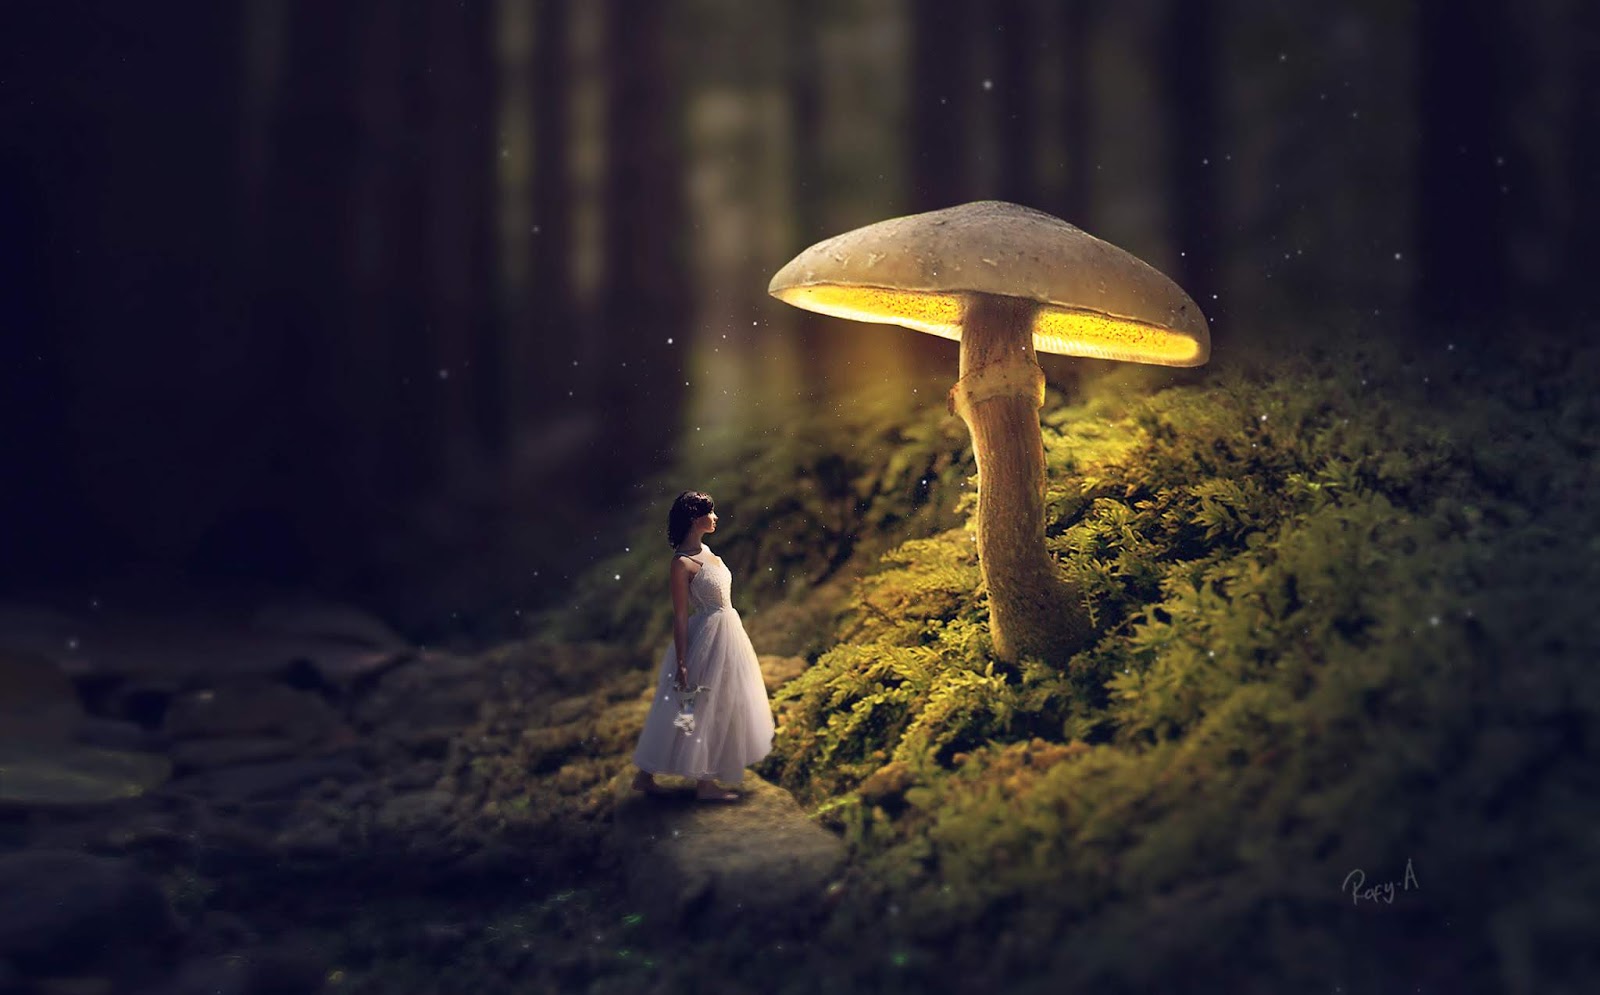 Glowing Mushroom Photoshop Fantasy Manipulation Tutorial Rafy A